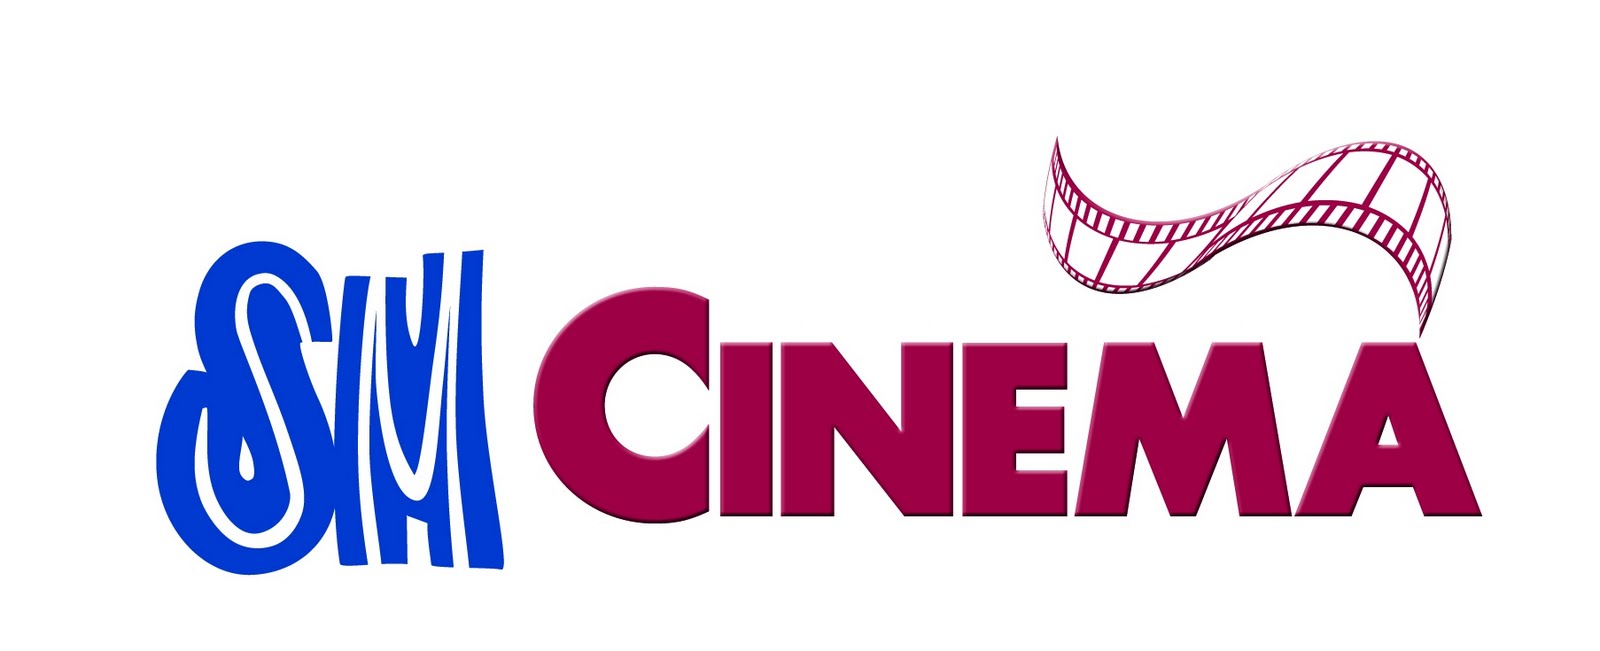 Логотип кинотеатра. Cinema надпись. Эмблема Синема. Надпись кинотеатр.